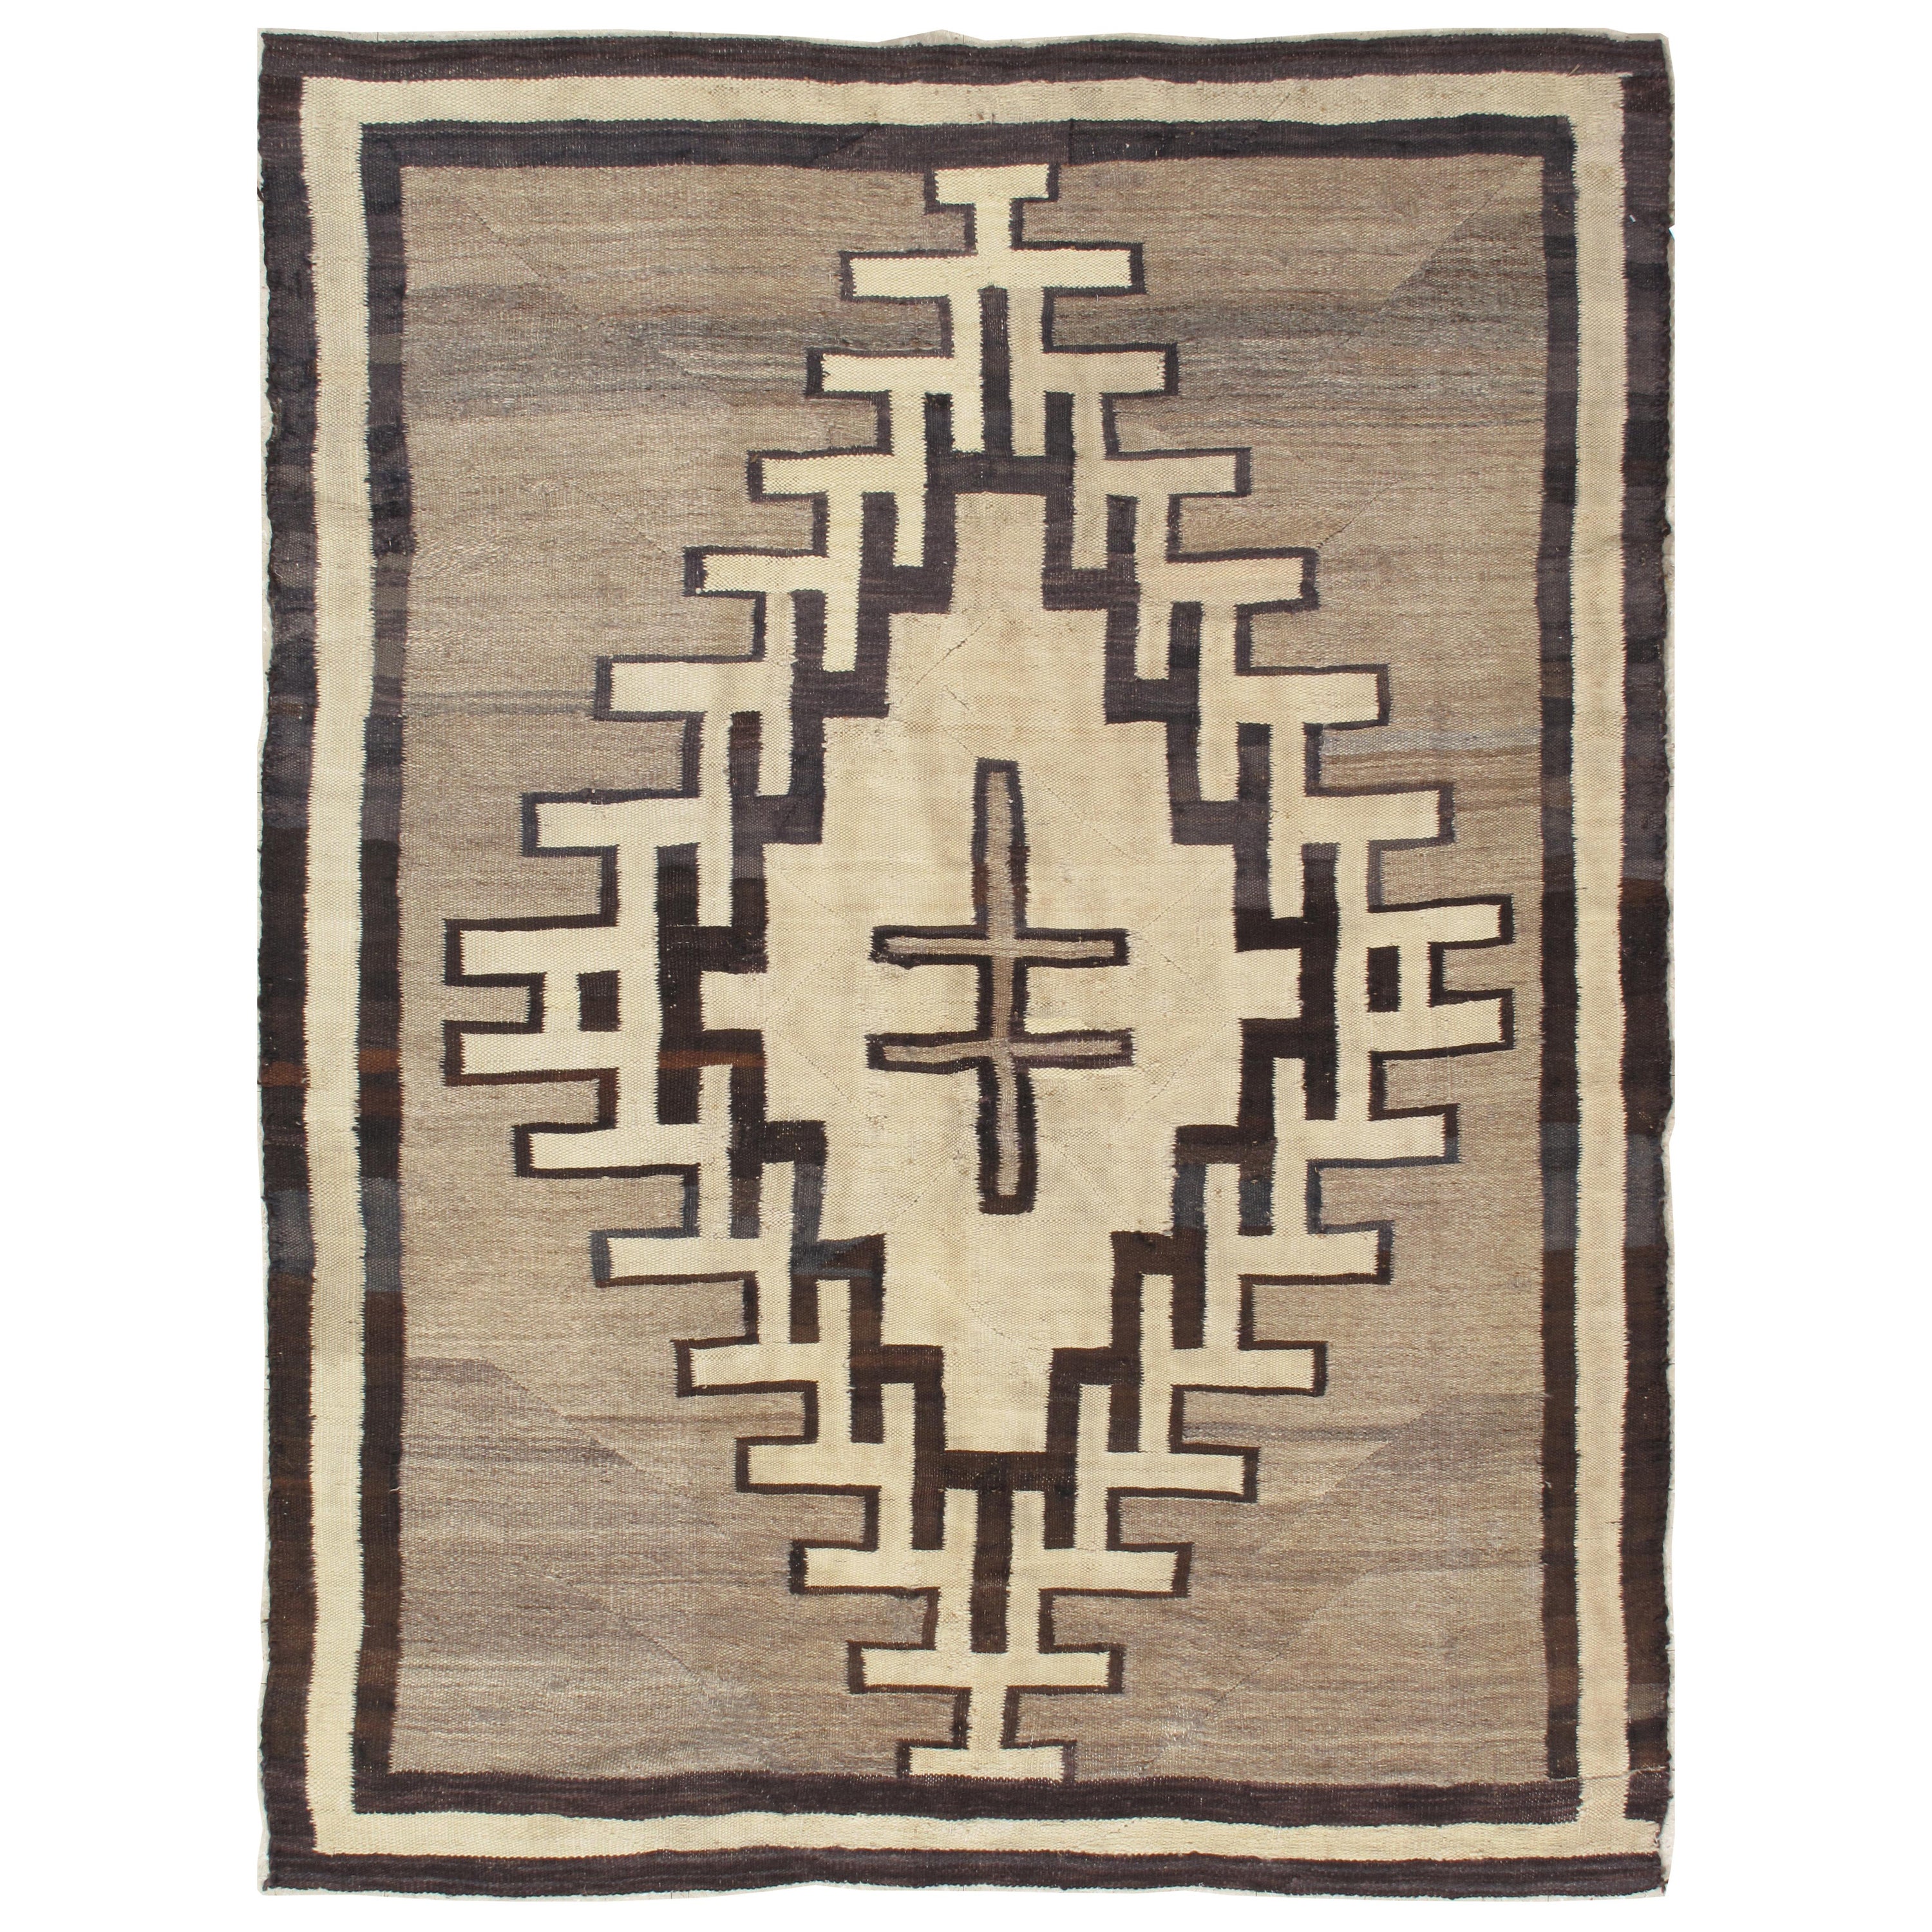 Antiker Navajo-Teppich, handgefertigt aus Wolle, neutrale Farben, Elfenbein, Beige, Grau und Braun